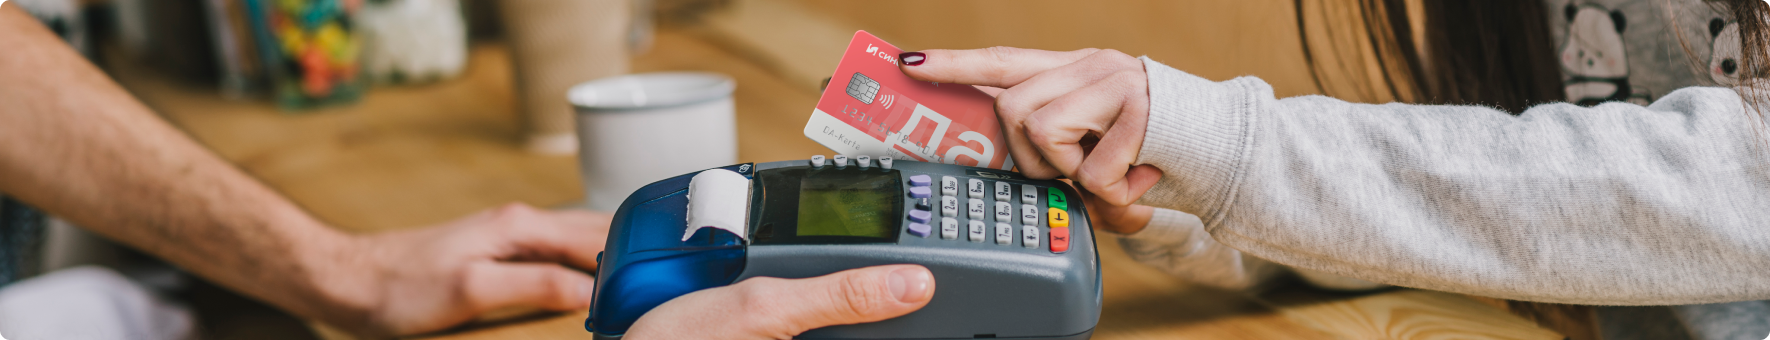 Оплата кредитной картой: что нужно знать